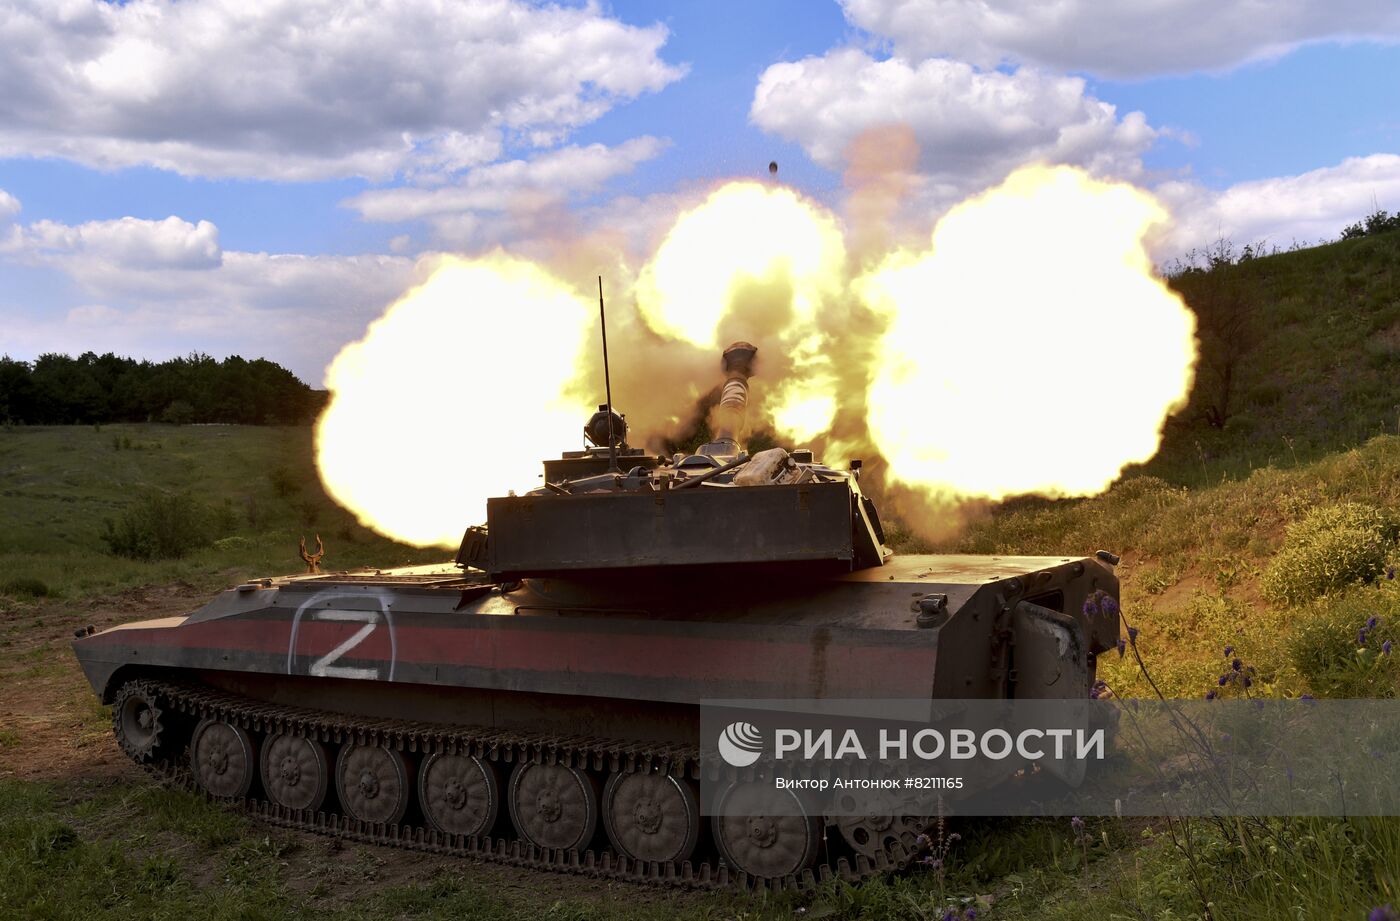 Артиллерия ЛНР стреляет агитснарядами с листовками по позициям ВСУ